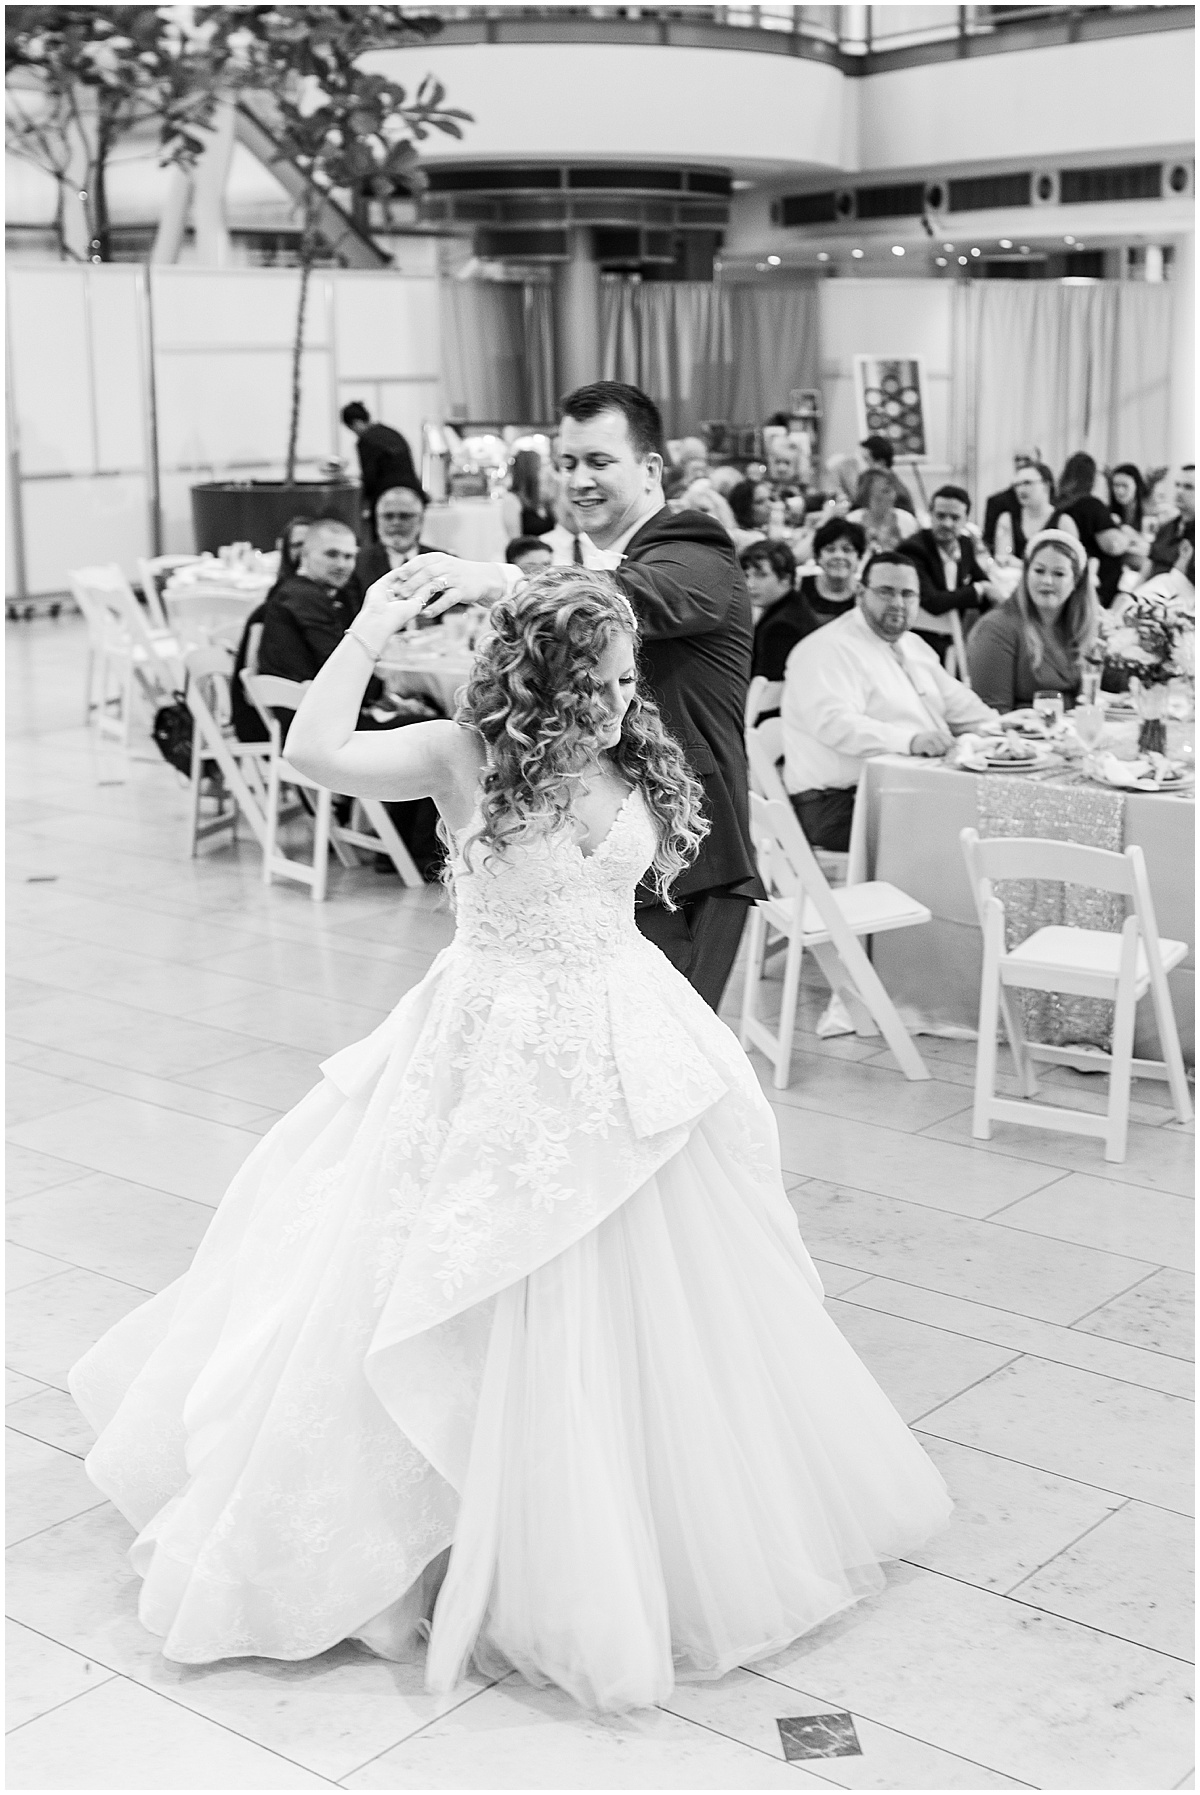 Bride and groom dance at Indianapolis Artsgarden wedding reception